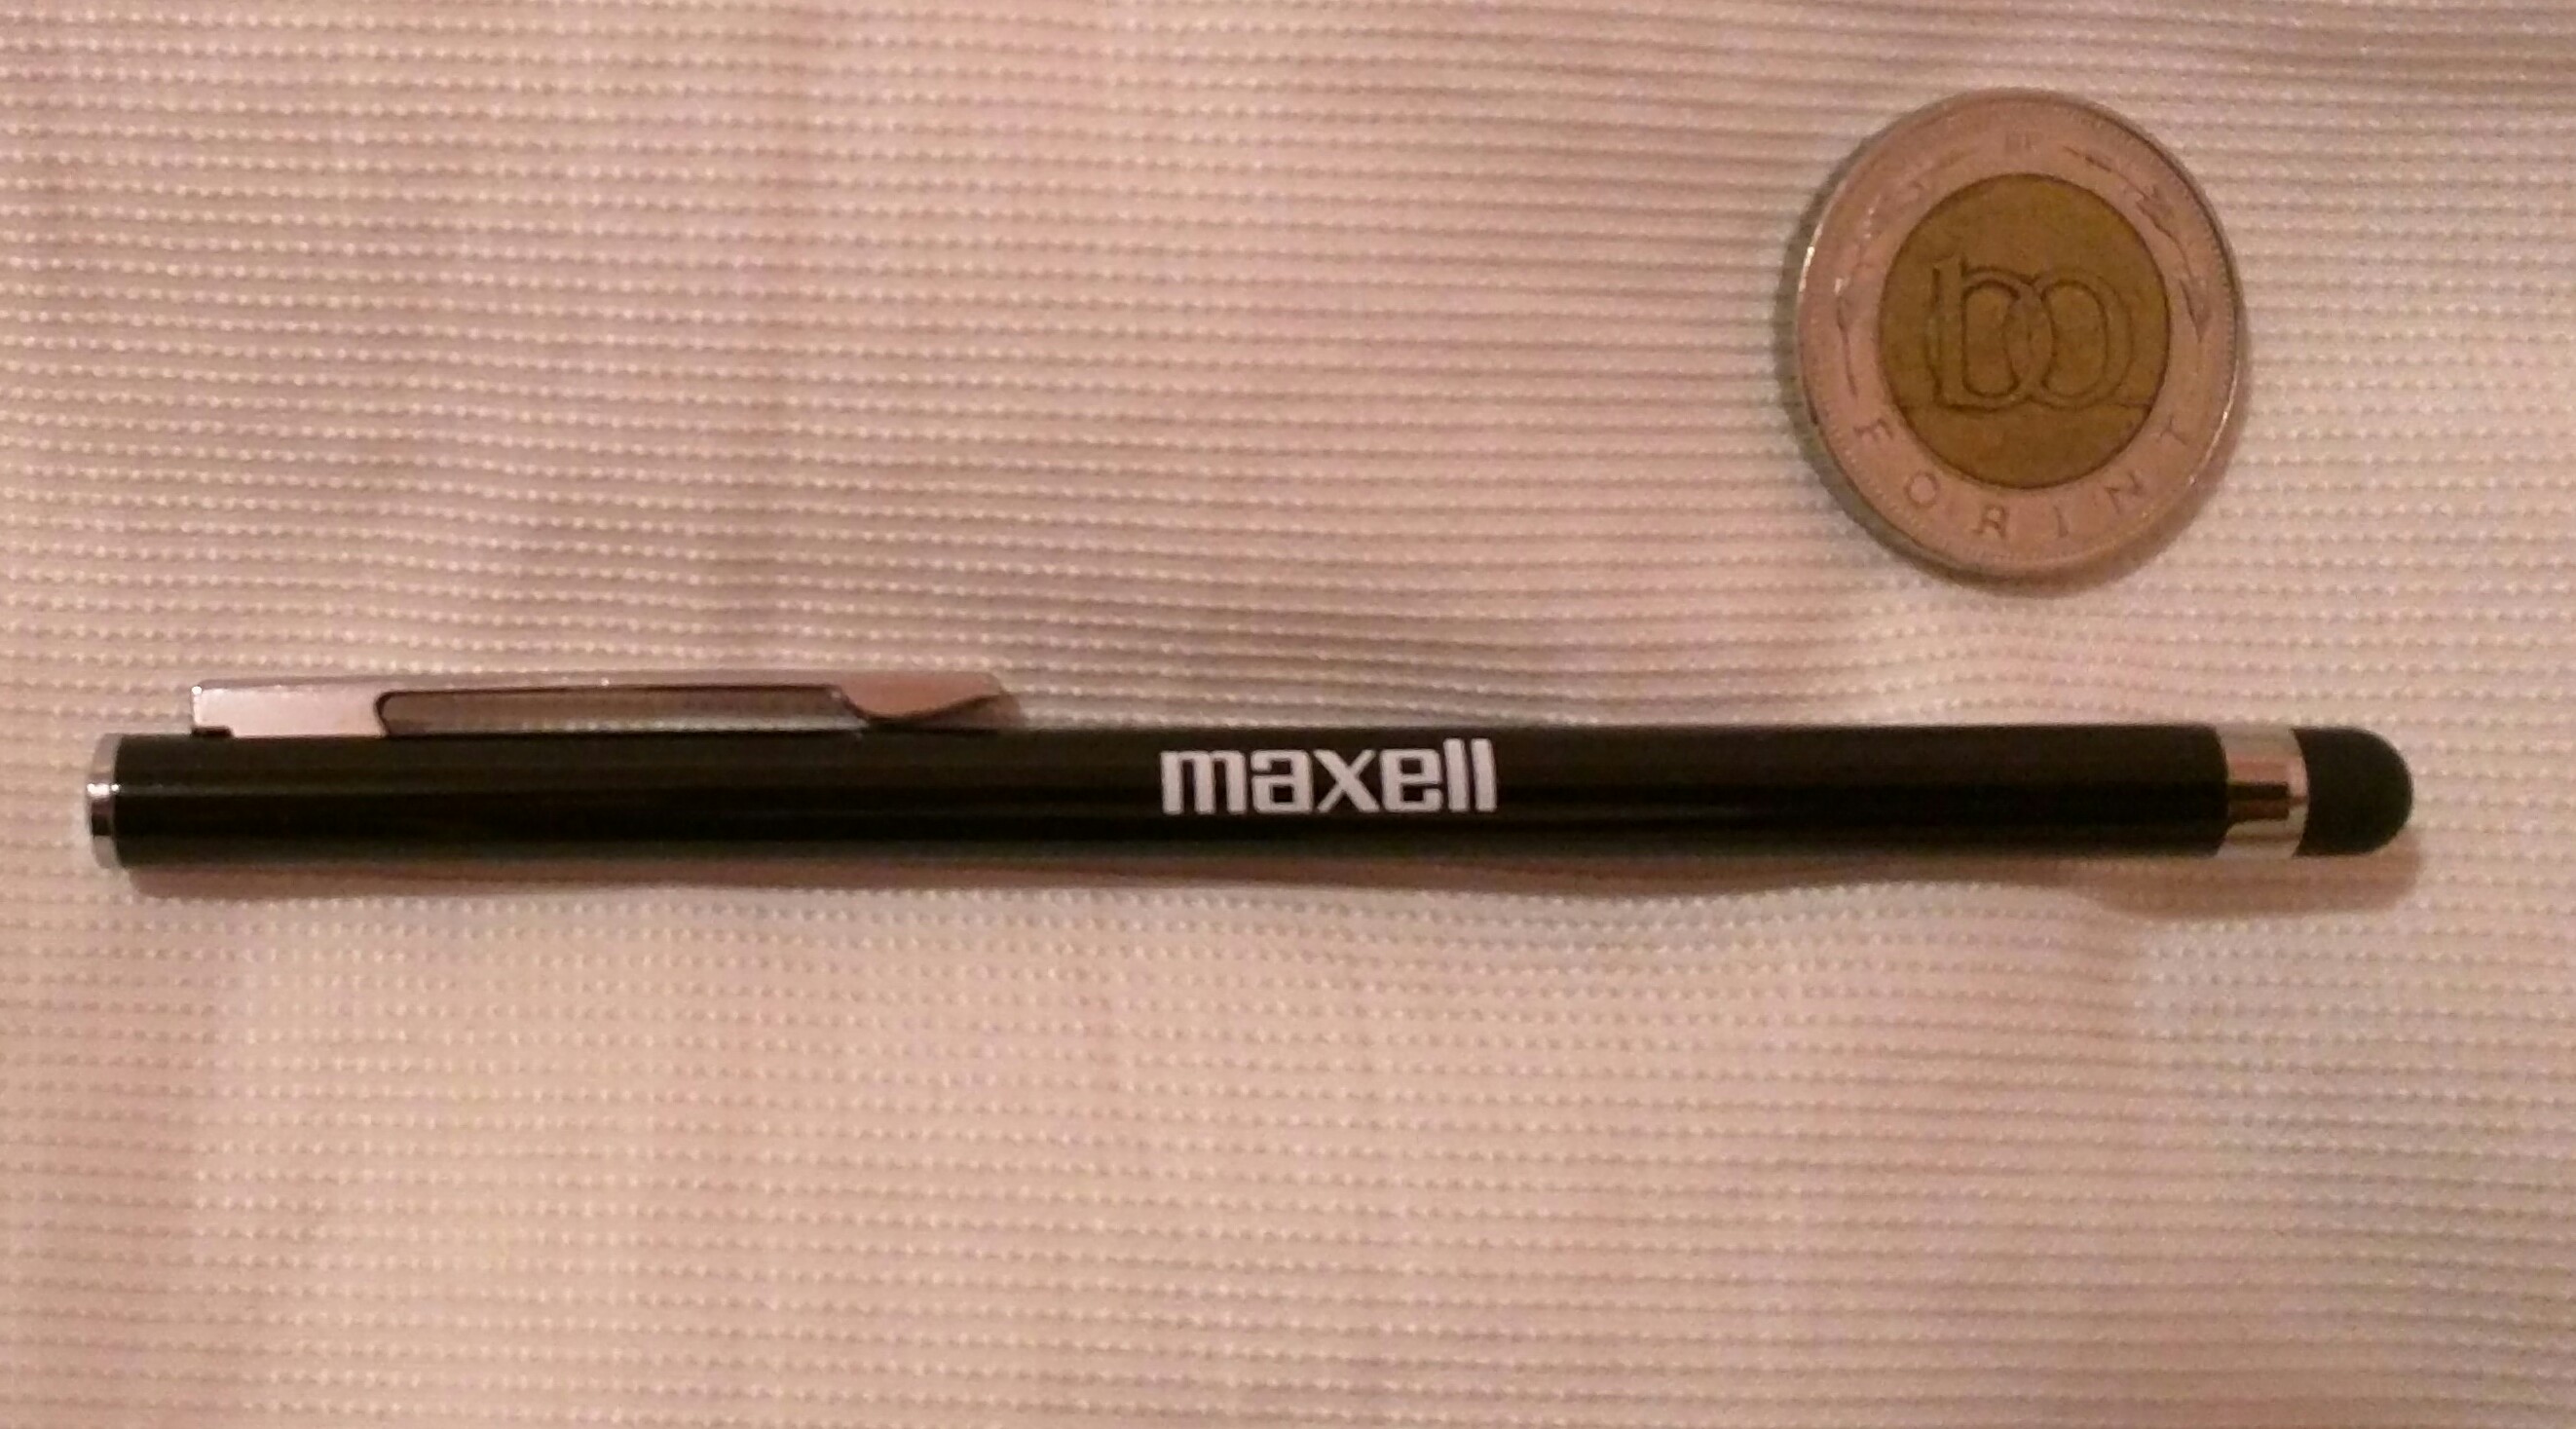 maxell_stylus_pen.jpg